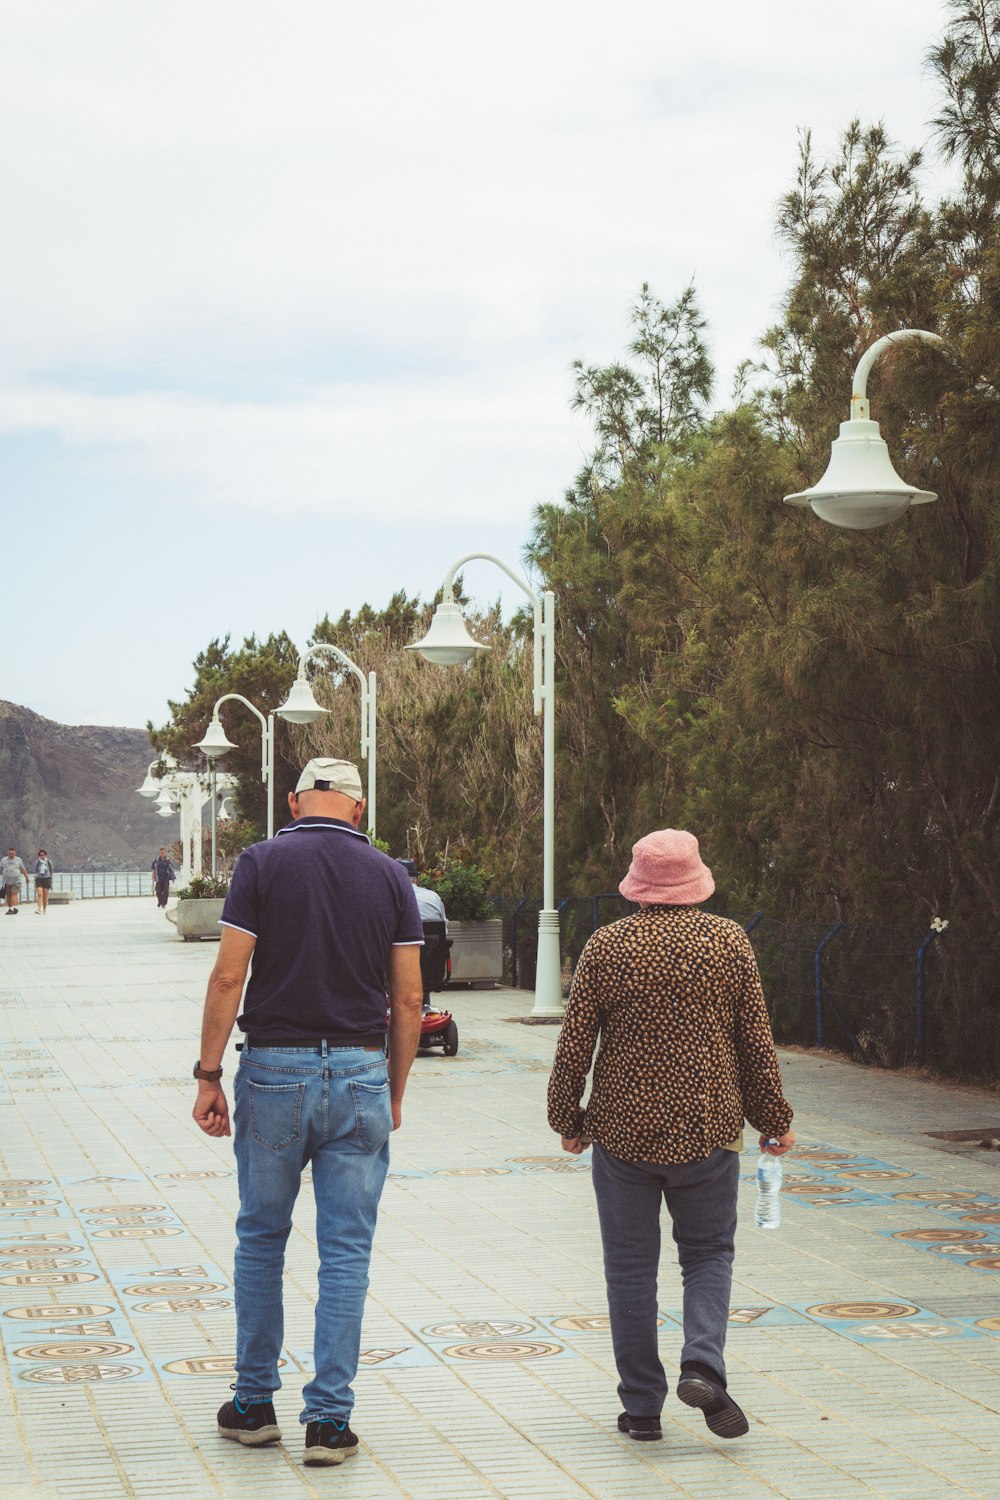 a man and woman walking on a sidewalk